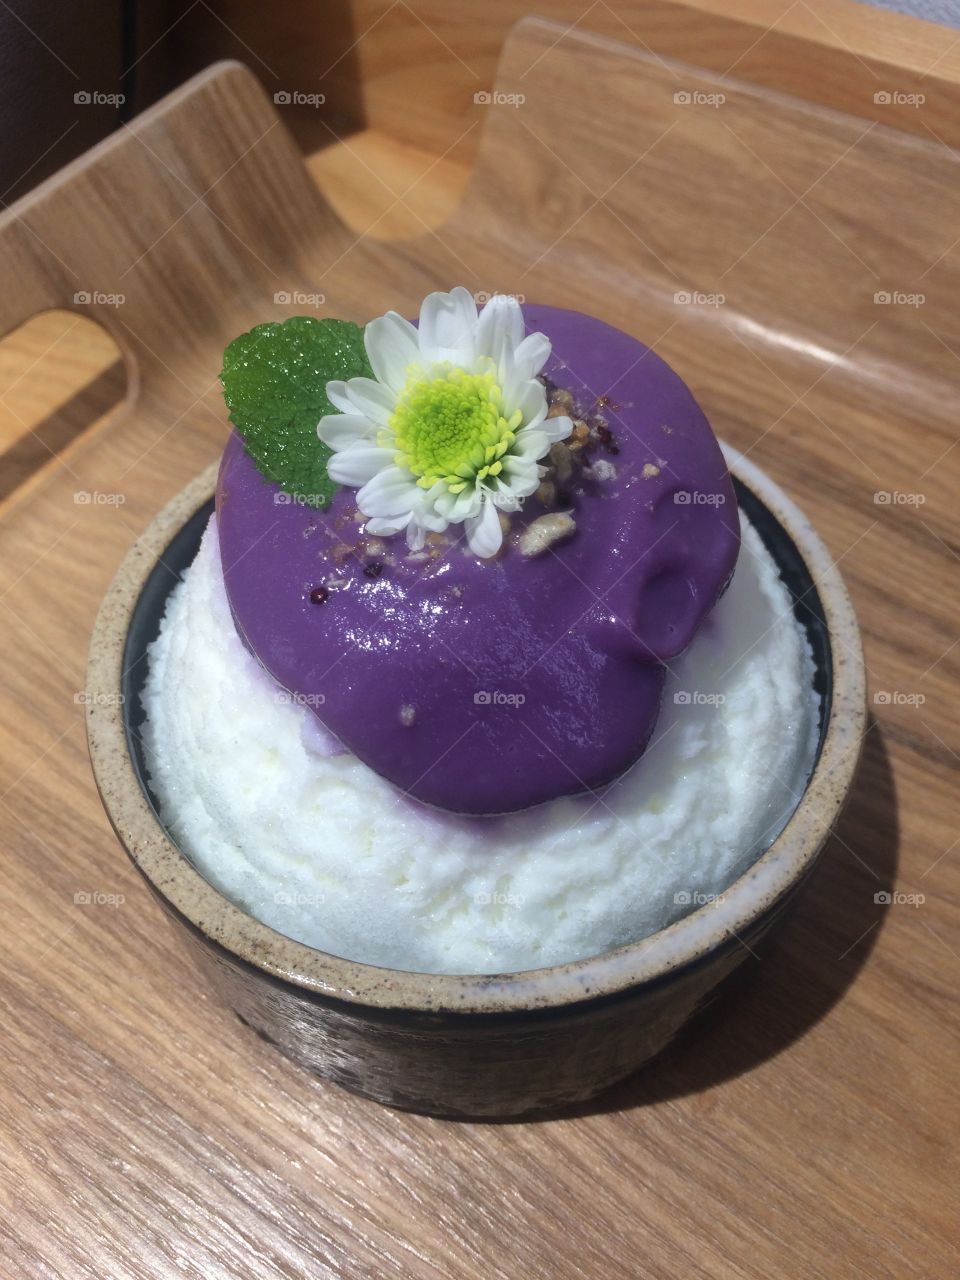 Dessert in Korea